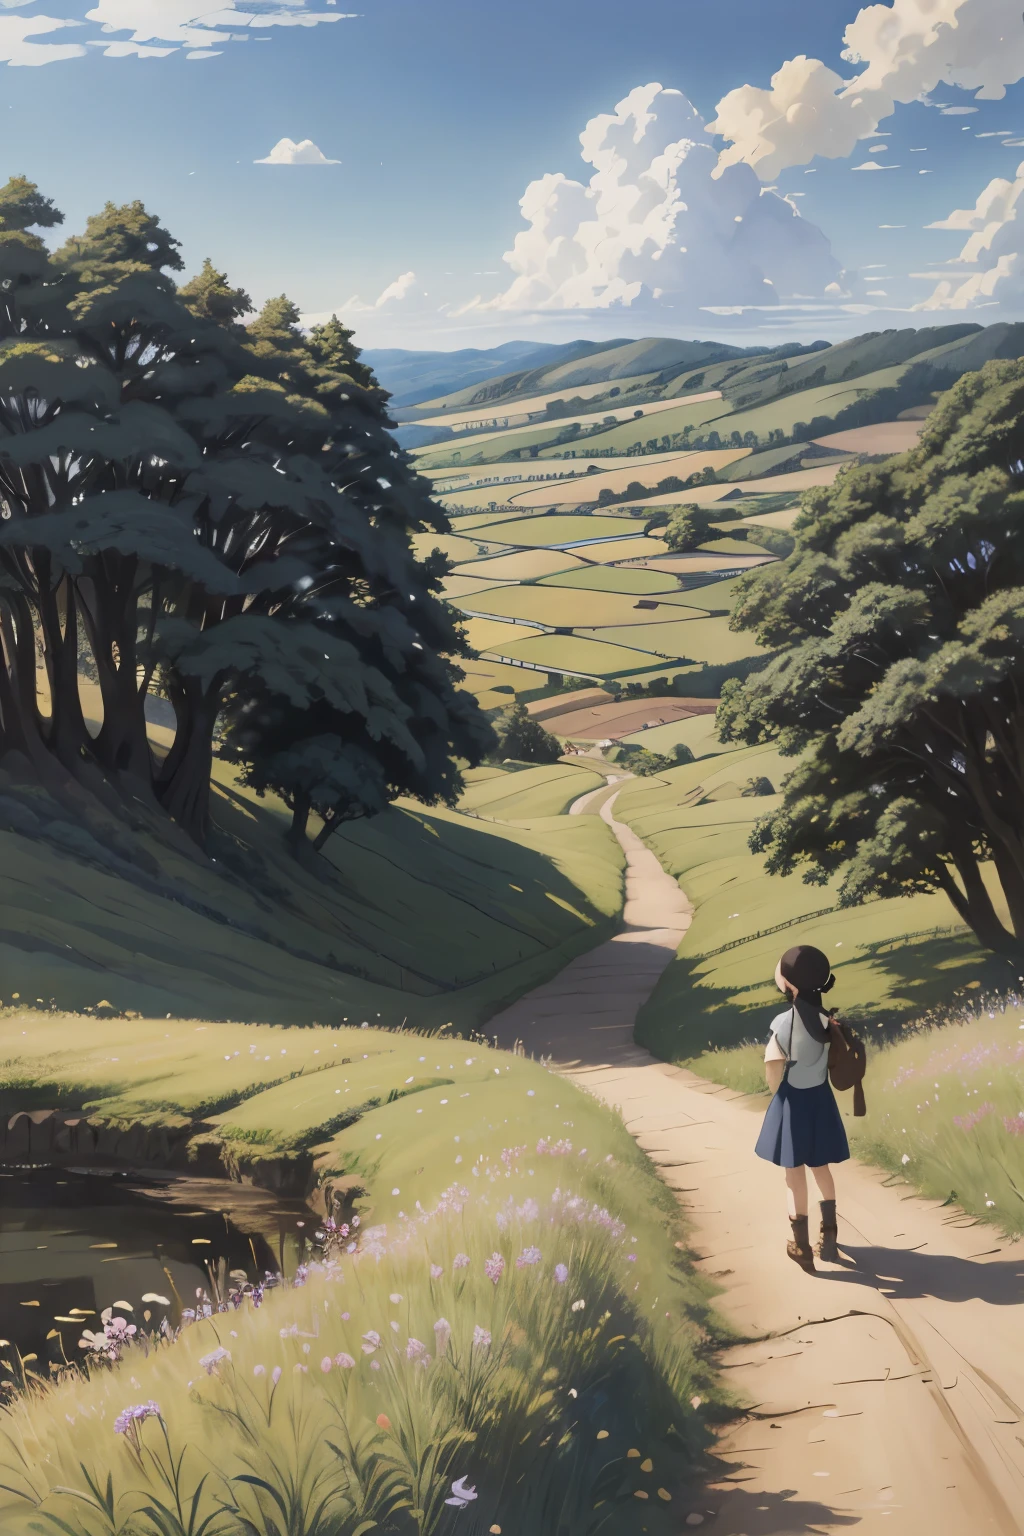 เหมือนจริง, จริง, ภาพวาดสีน้ำมันภูมิทัศน์ที่สวยงามและน่าทึ่ง Studio Ghibli Hayao Miyazaki Petals Grassland Blue Sky Grassland Country Road,อาคาร, สาวสวย